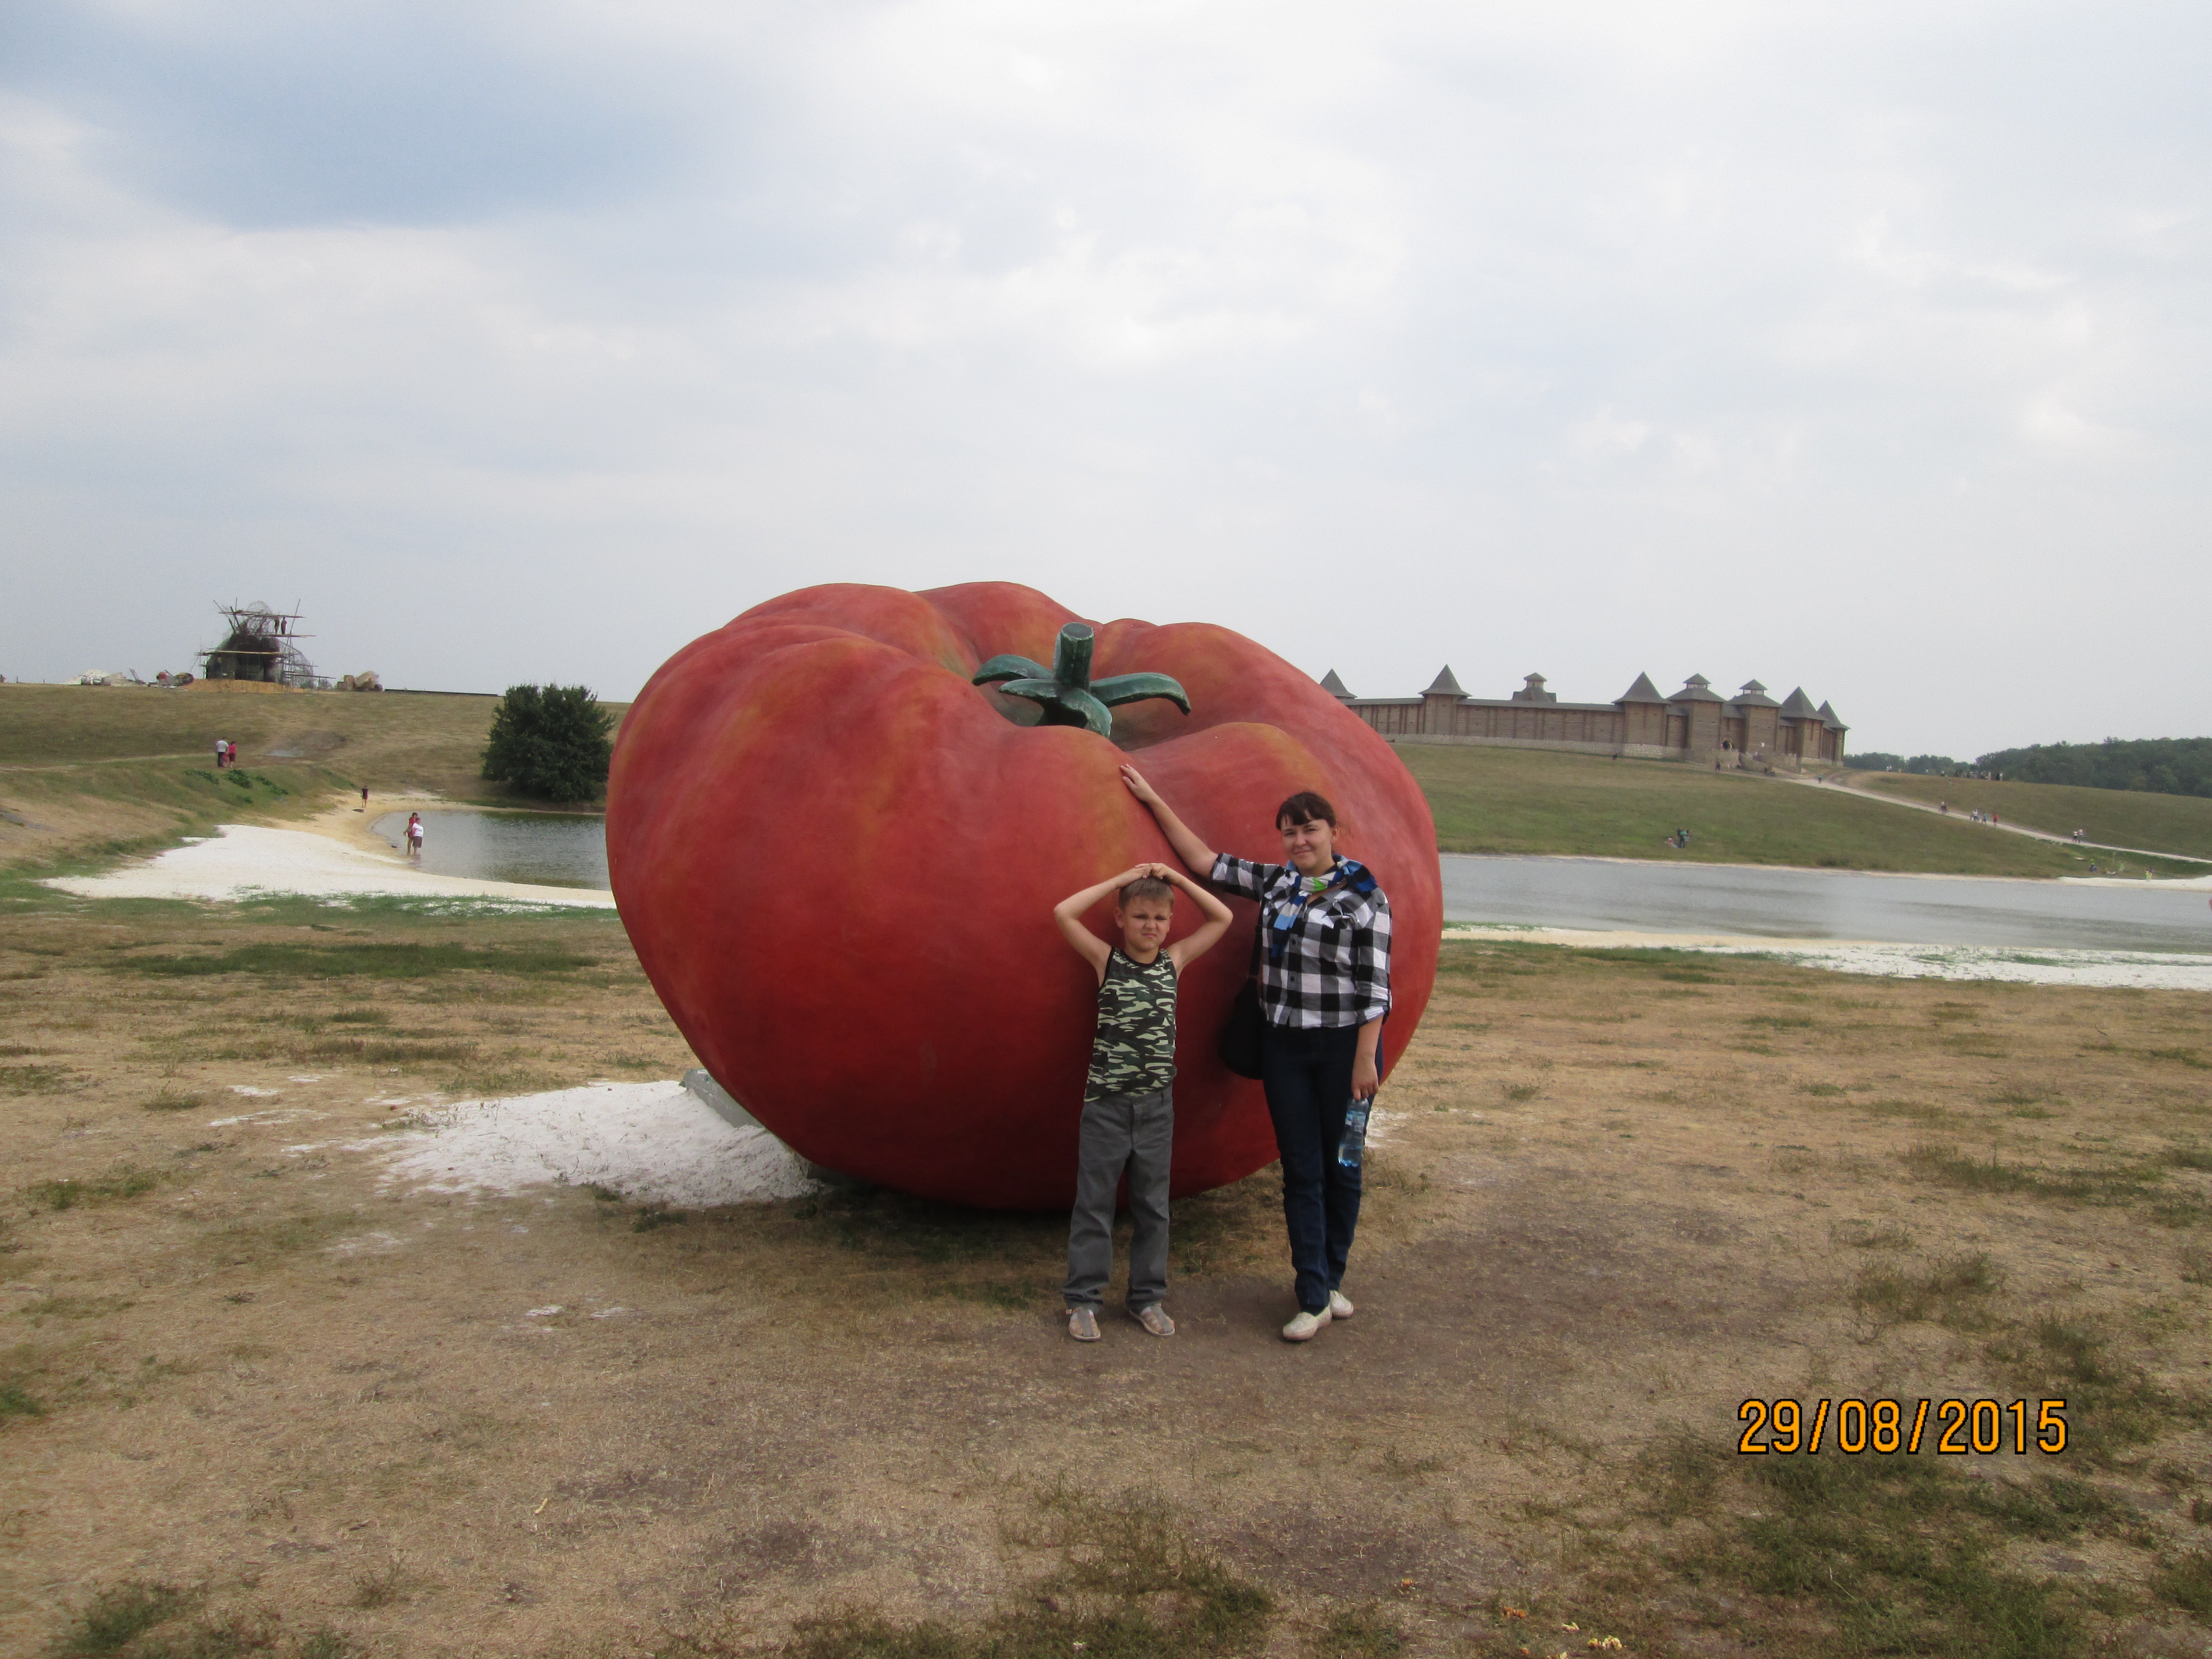 Памятник помидору в турции фото